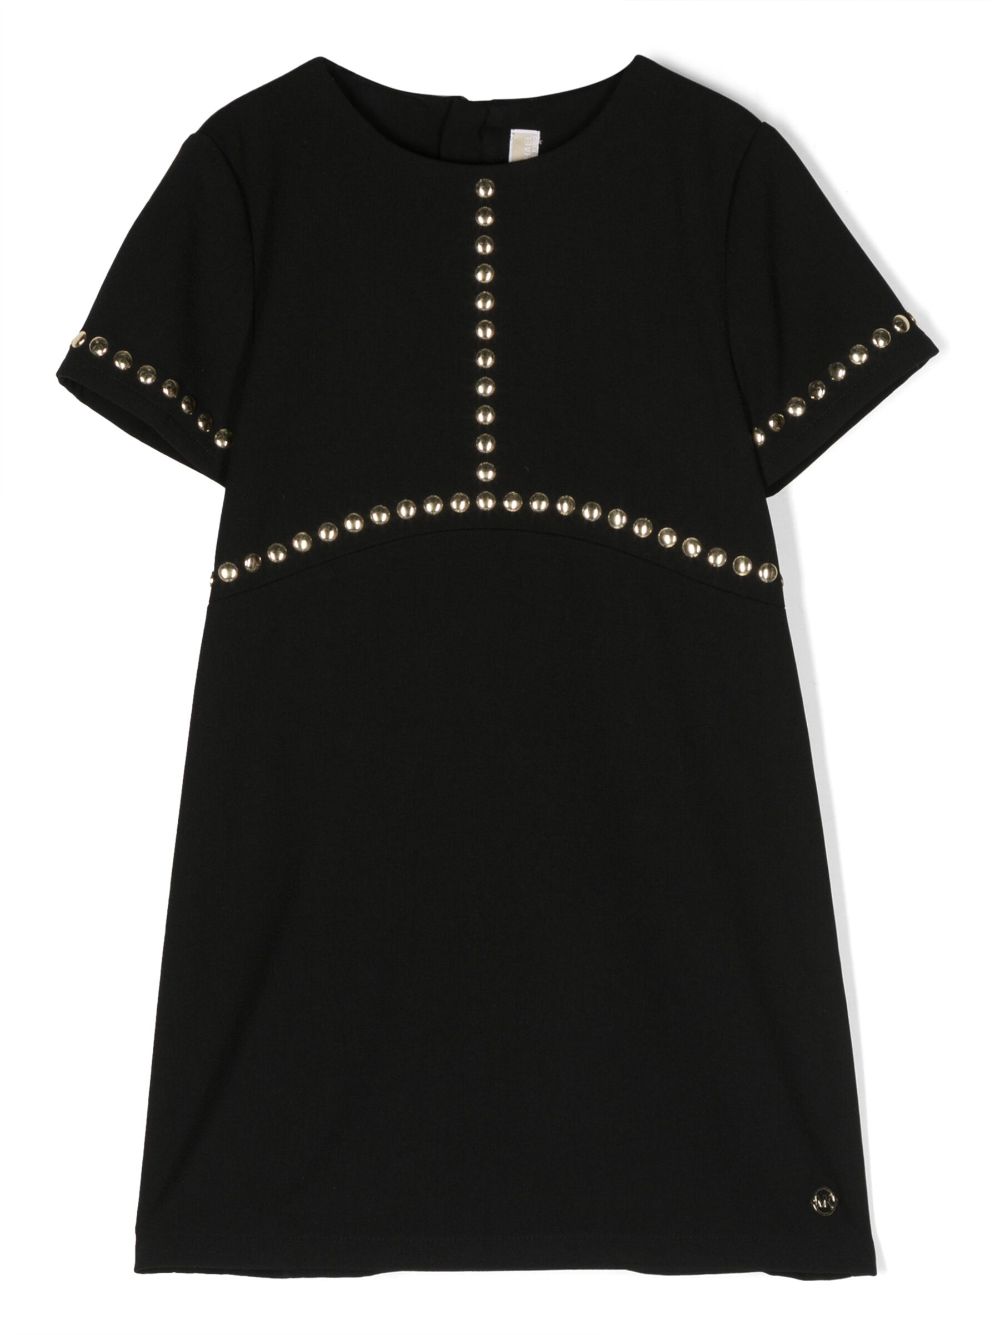 Michael Kors Kids stud-embellished short-sleeve dress - Black